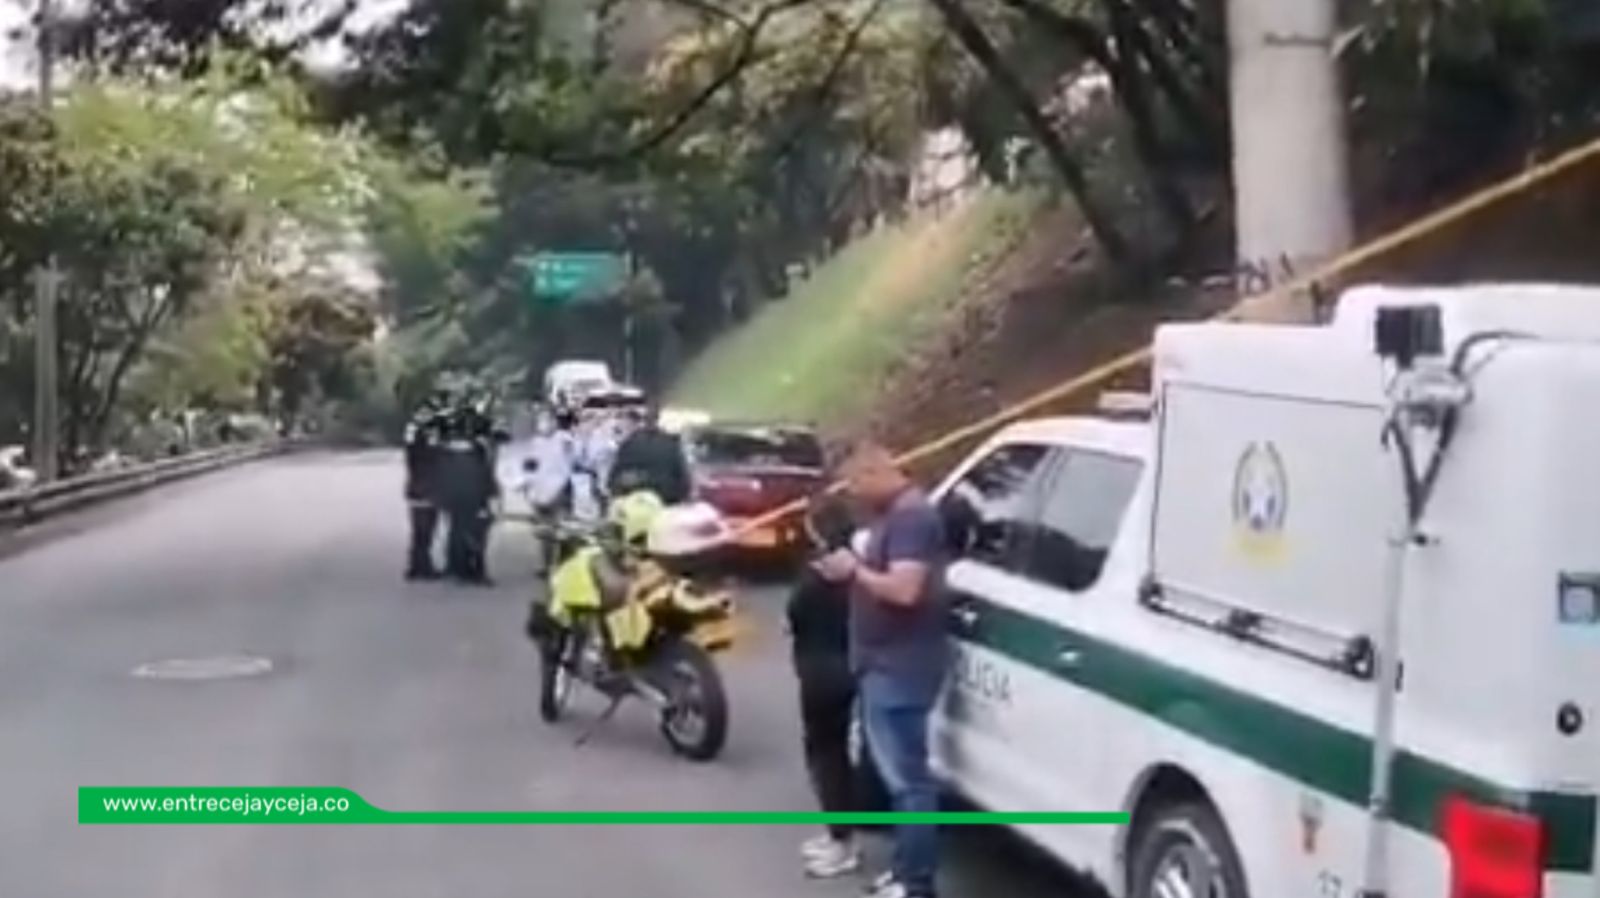 Hallan una persona muerta amordazada dentro de un vehículo en Medellín